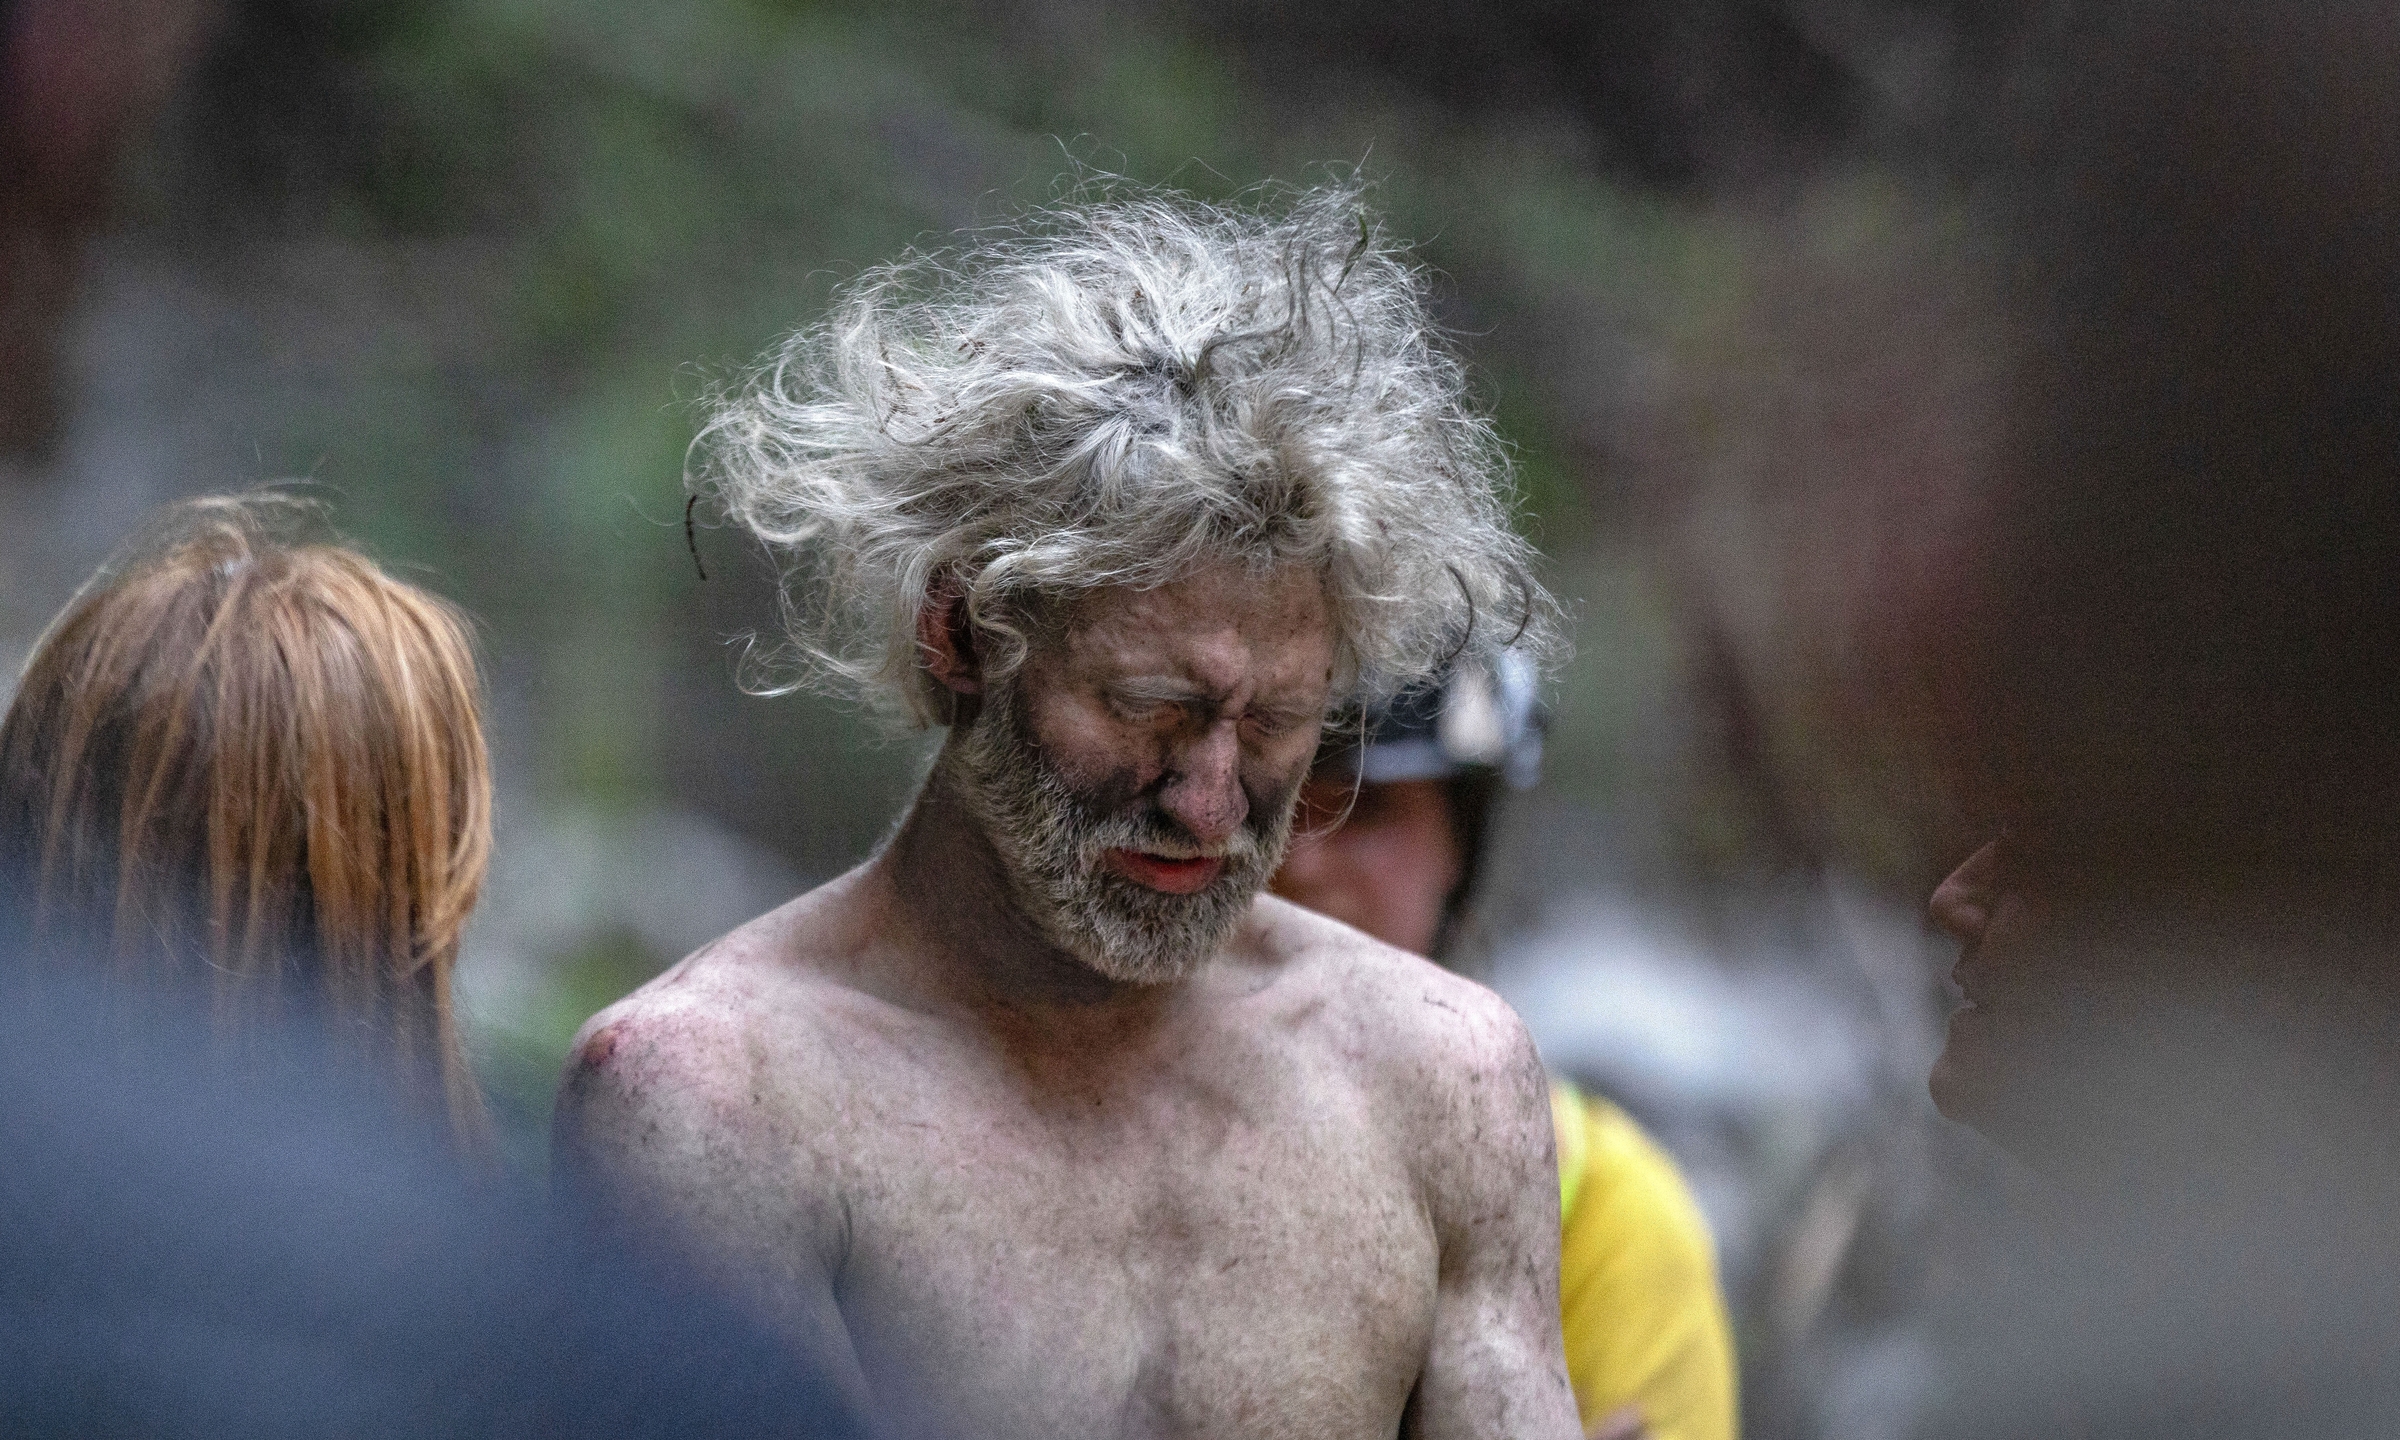 Lukas McClish khi được đội cứu hộ giải cứu trong khu rừng ở California ngày 20/6. Ảnh: AP